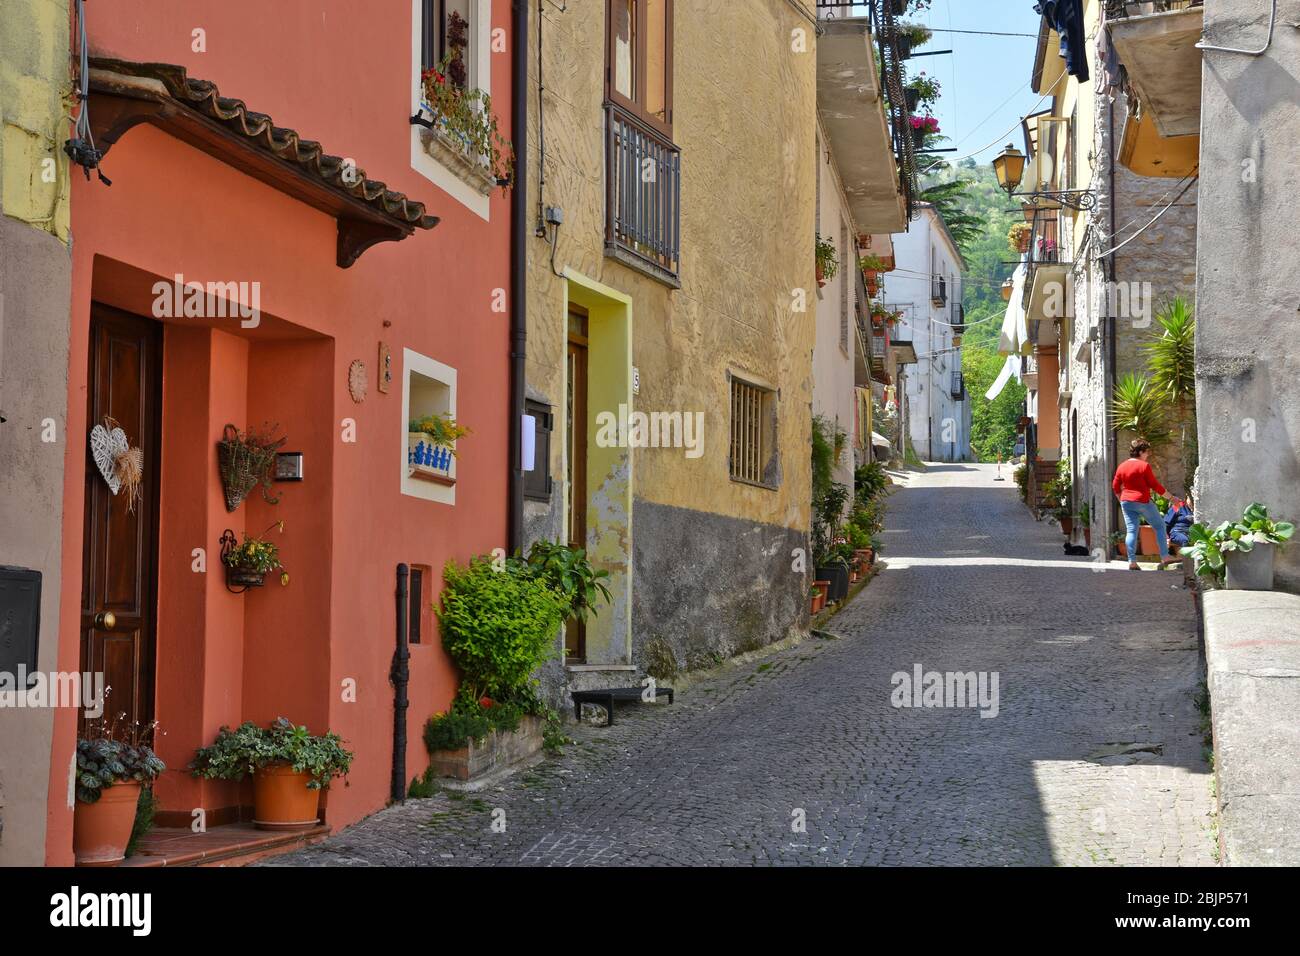 Une rue étroite entre les maisons du village de Polla dans la province de Salerne Banque D'Images